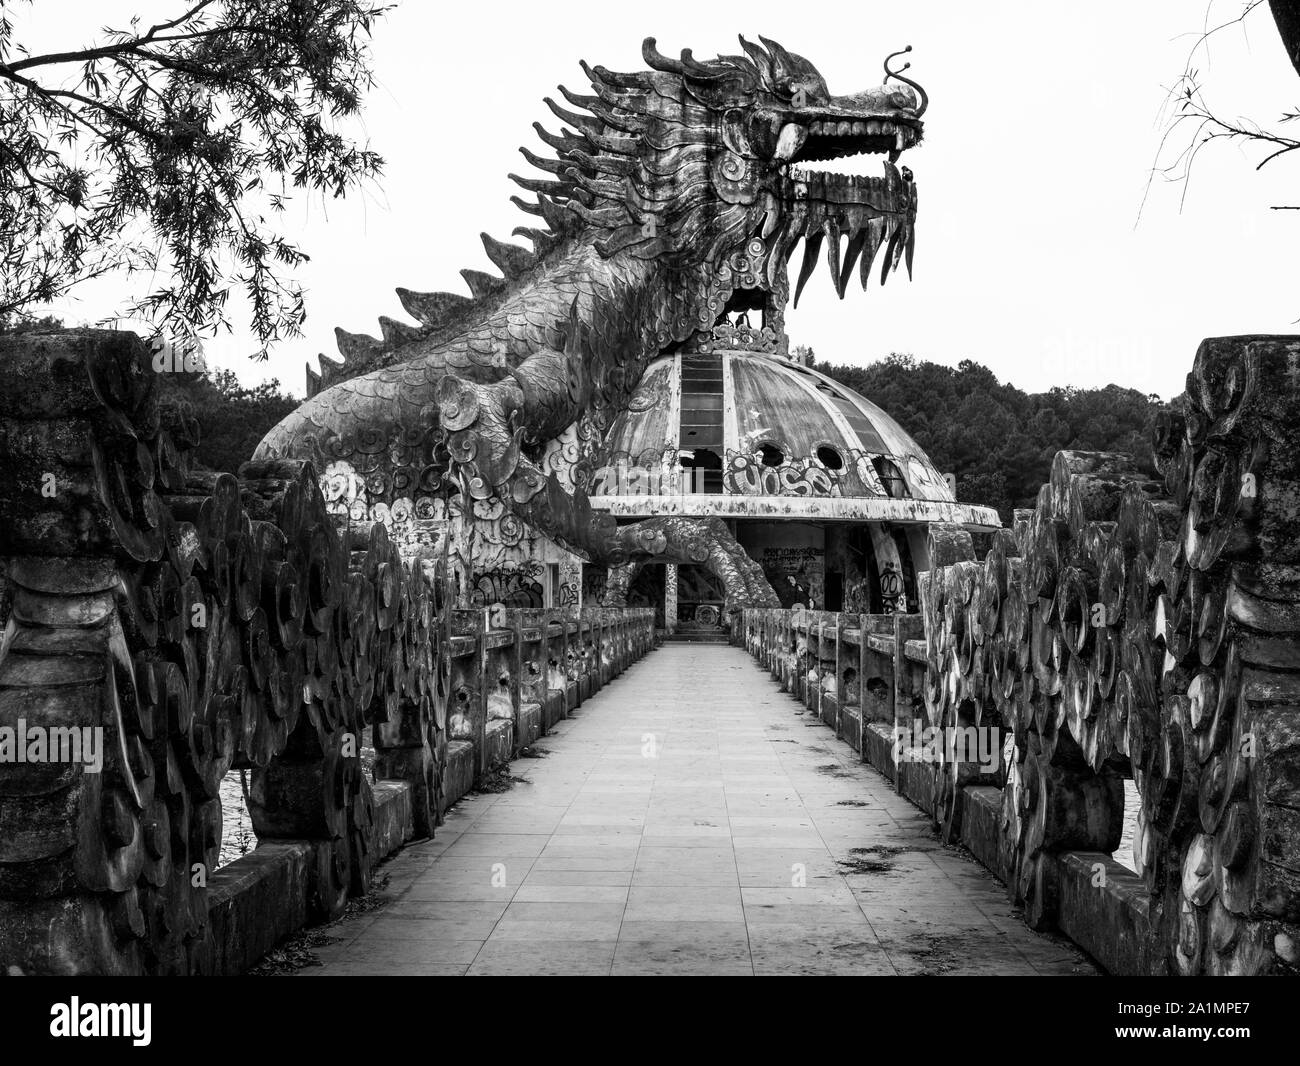 Riesig und unheimlich stone Dragon mit Spikes und offener Mund mit Zähnen in der Seitenansicht mit Fußweg an verlassenen Water Park, Schwarze und Weiße, Hue, Vietnam Stockfoto